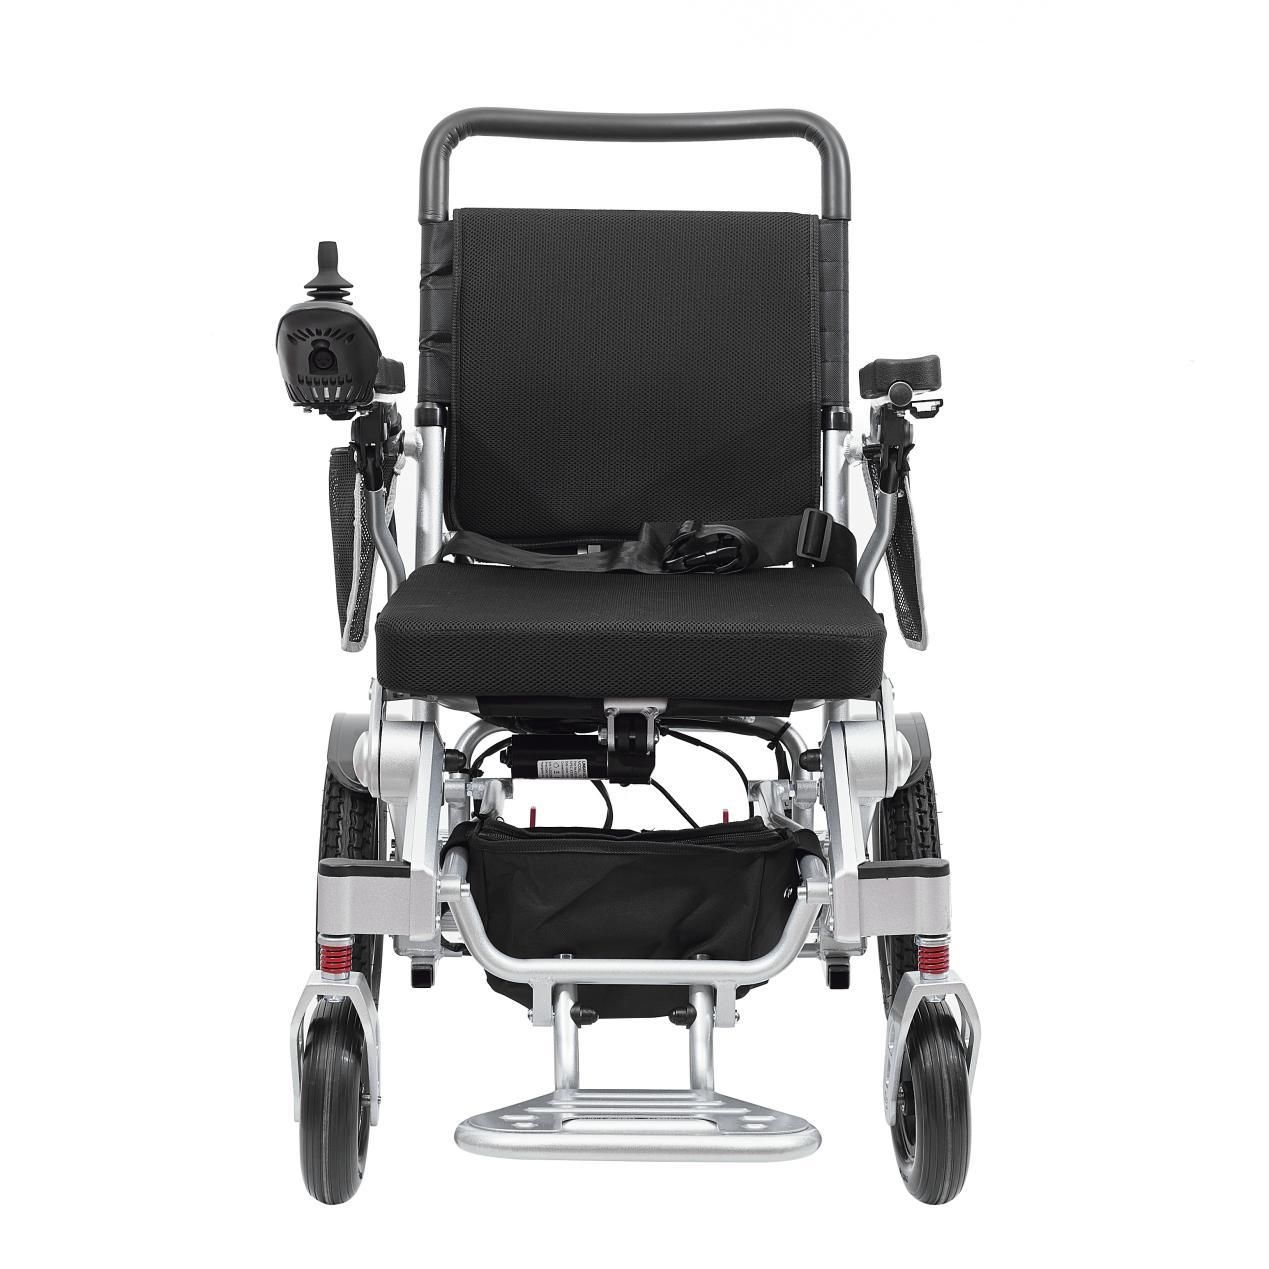 Quali metodi di manutenzione possono prolungare la durata di servizio della sedia a rotelle in lega di alluminio